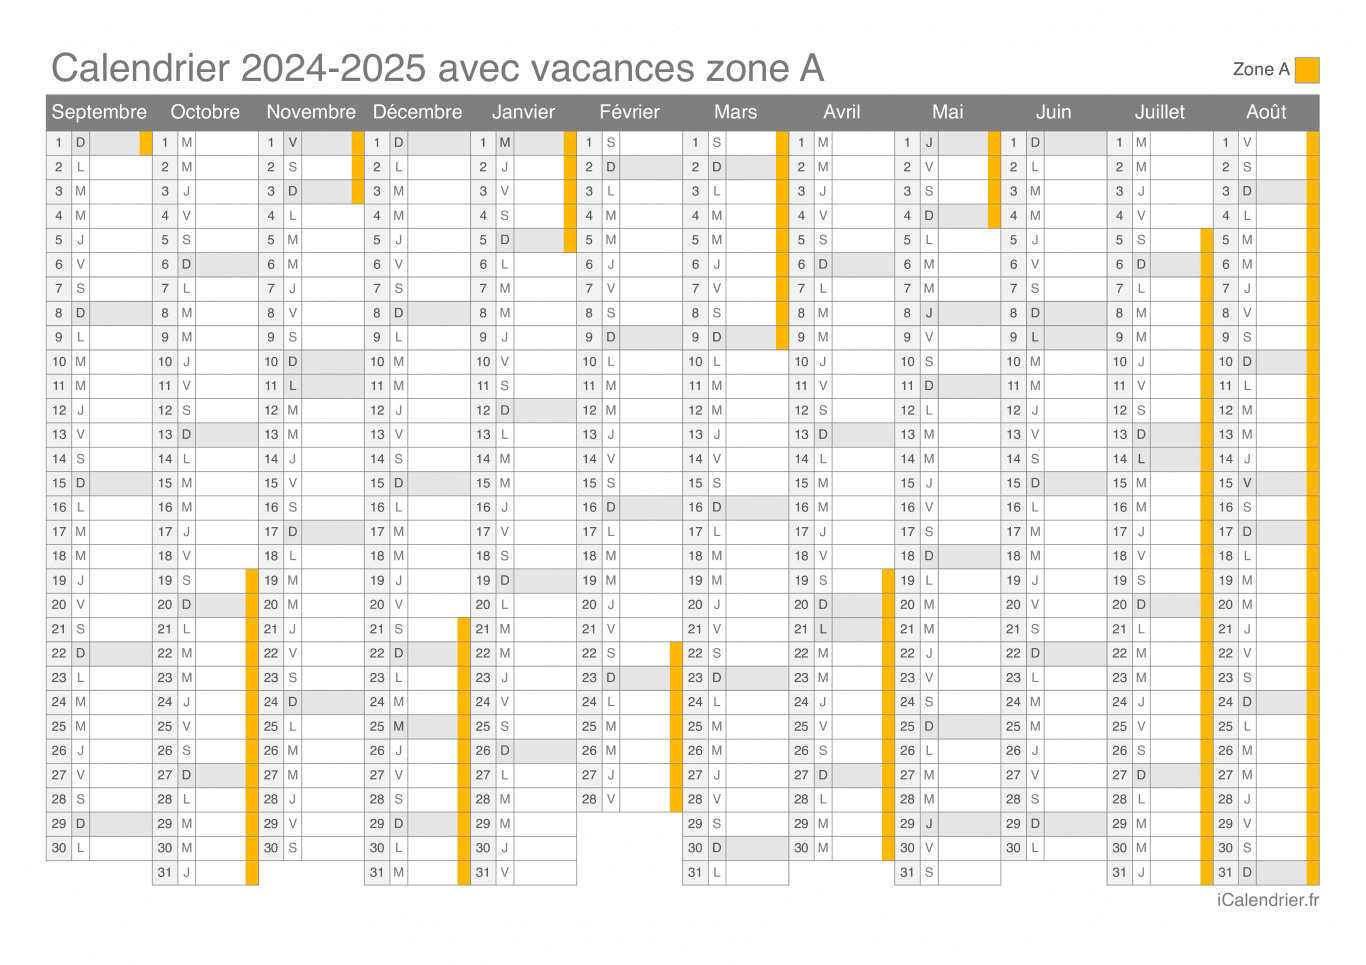 Calendrier des vacances scolaires 2024-2025 de la zone A